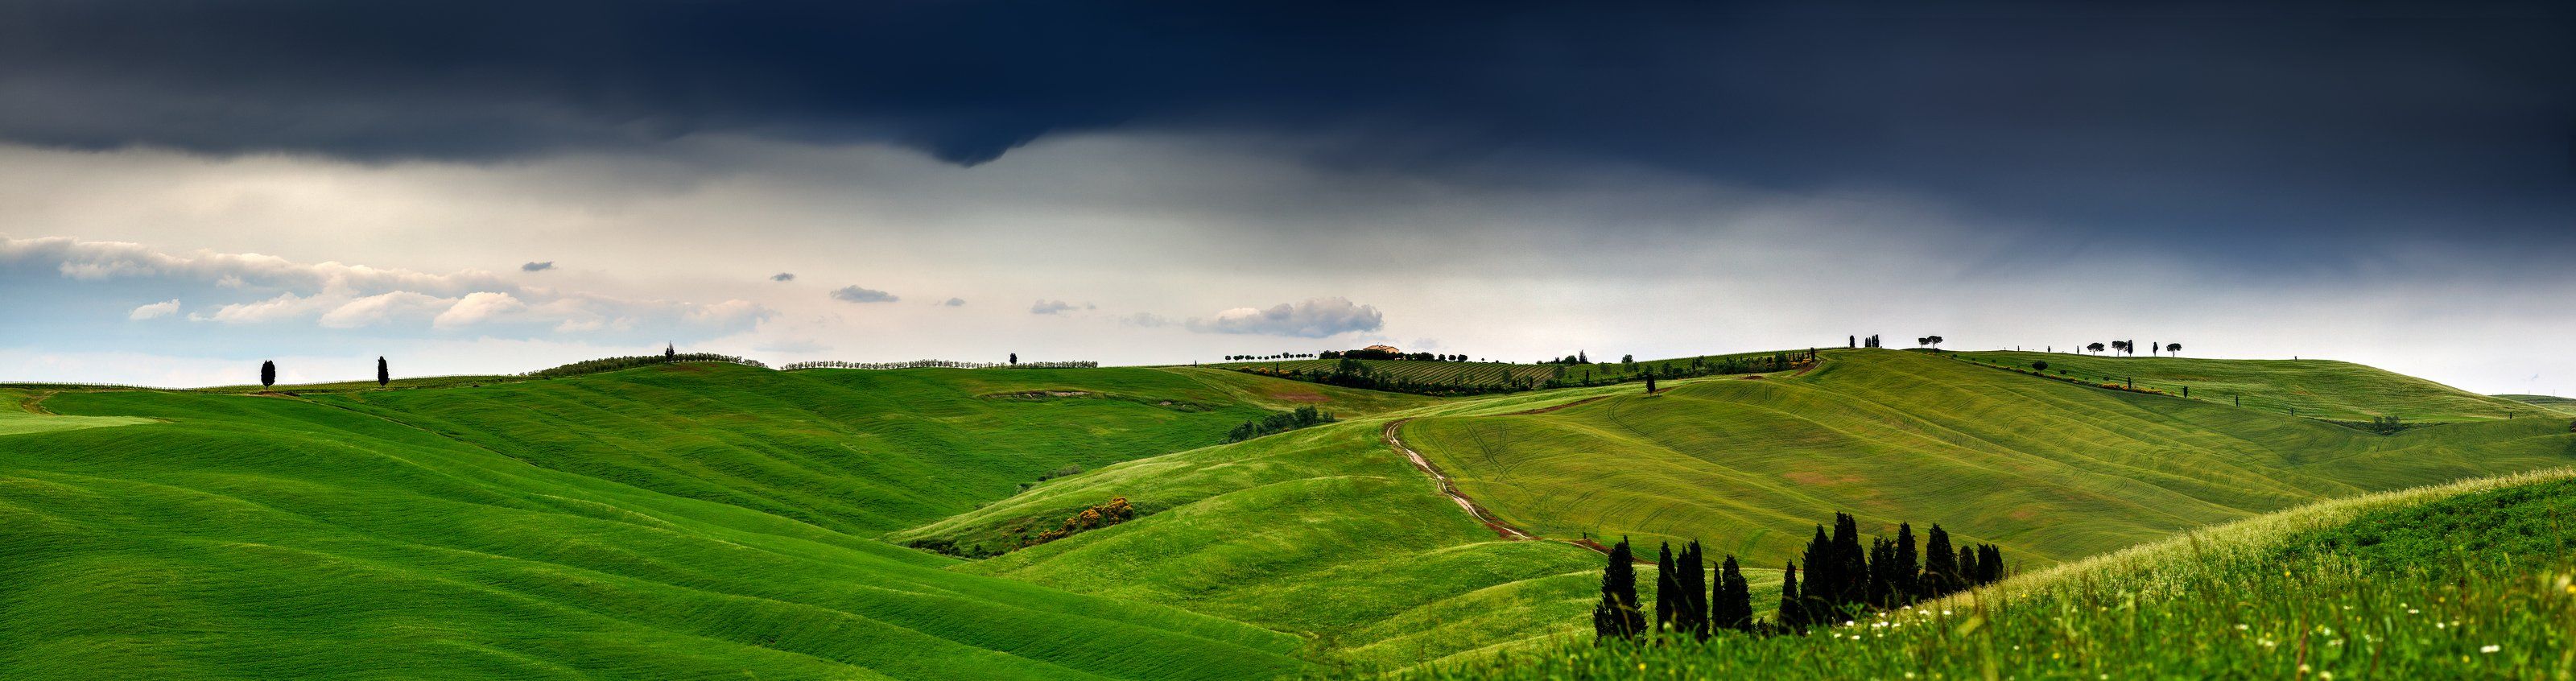 Italy, tuscany, landscape, Igor Sokolovsky